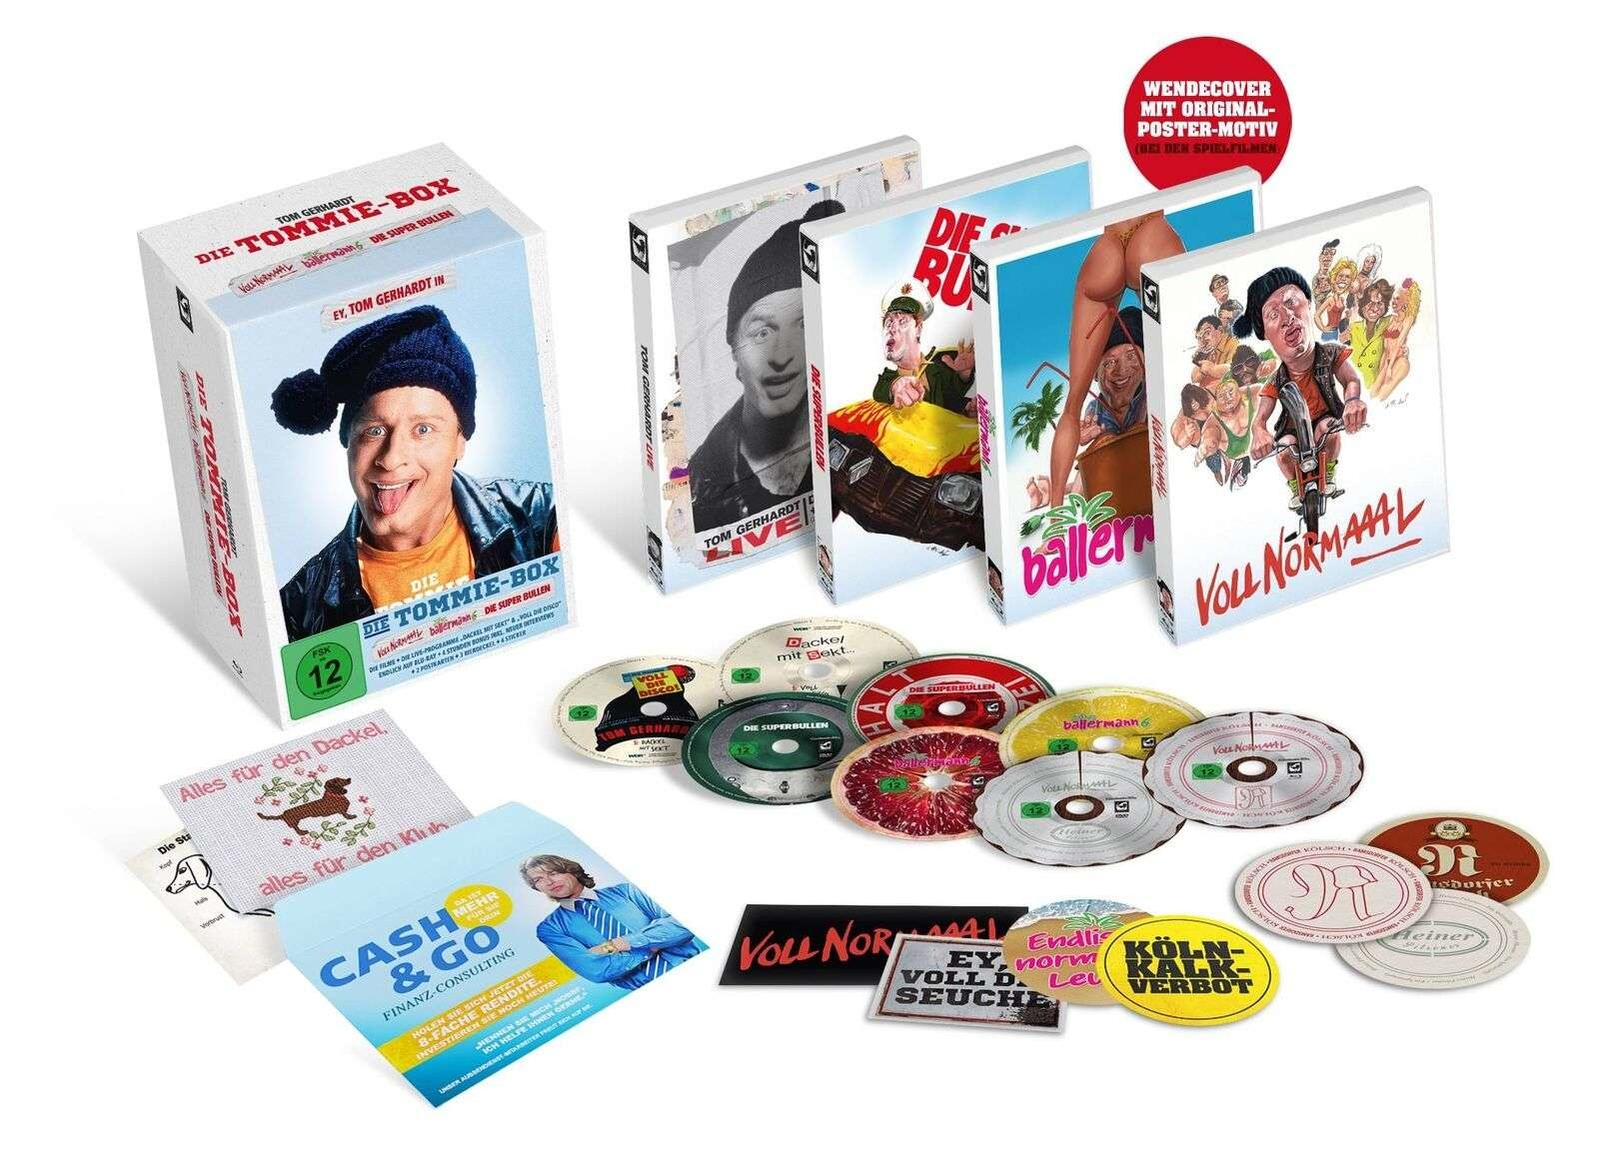 Disco) Blu-ray (Voll Gerhardt: Tom 6, normaaal, Die die Voll Sekt, Die Tommie-Box DVD Superbullen, Dackel Ballermann mit +